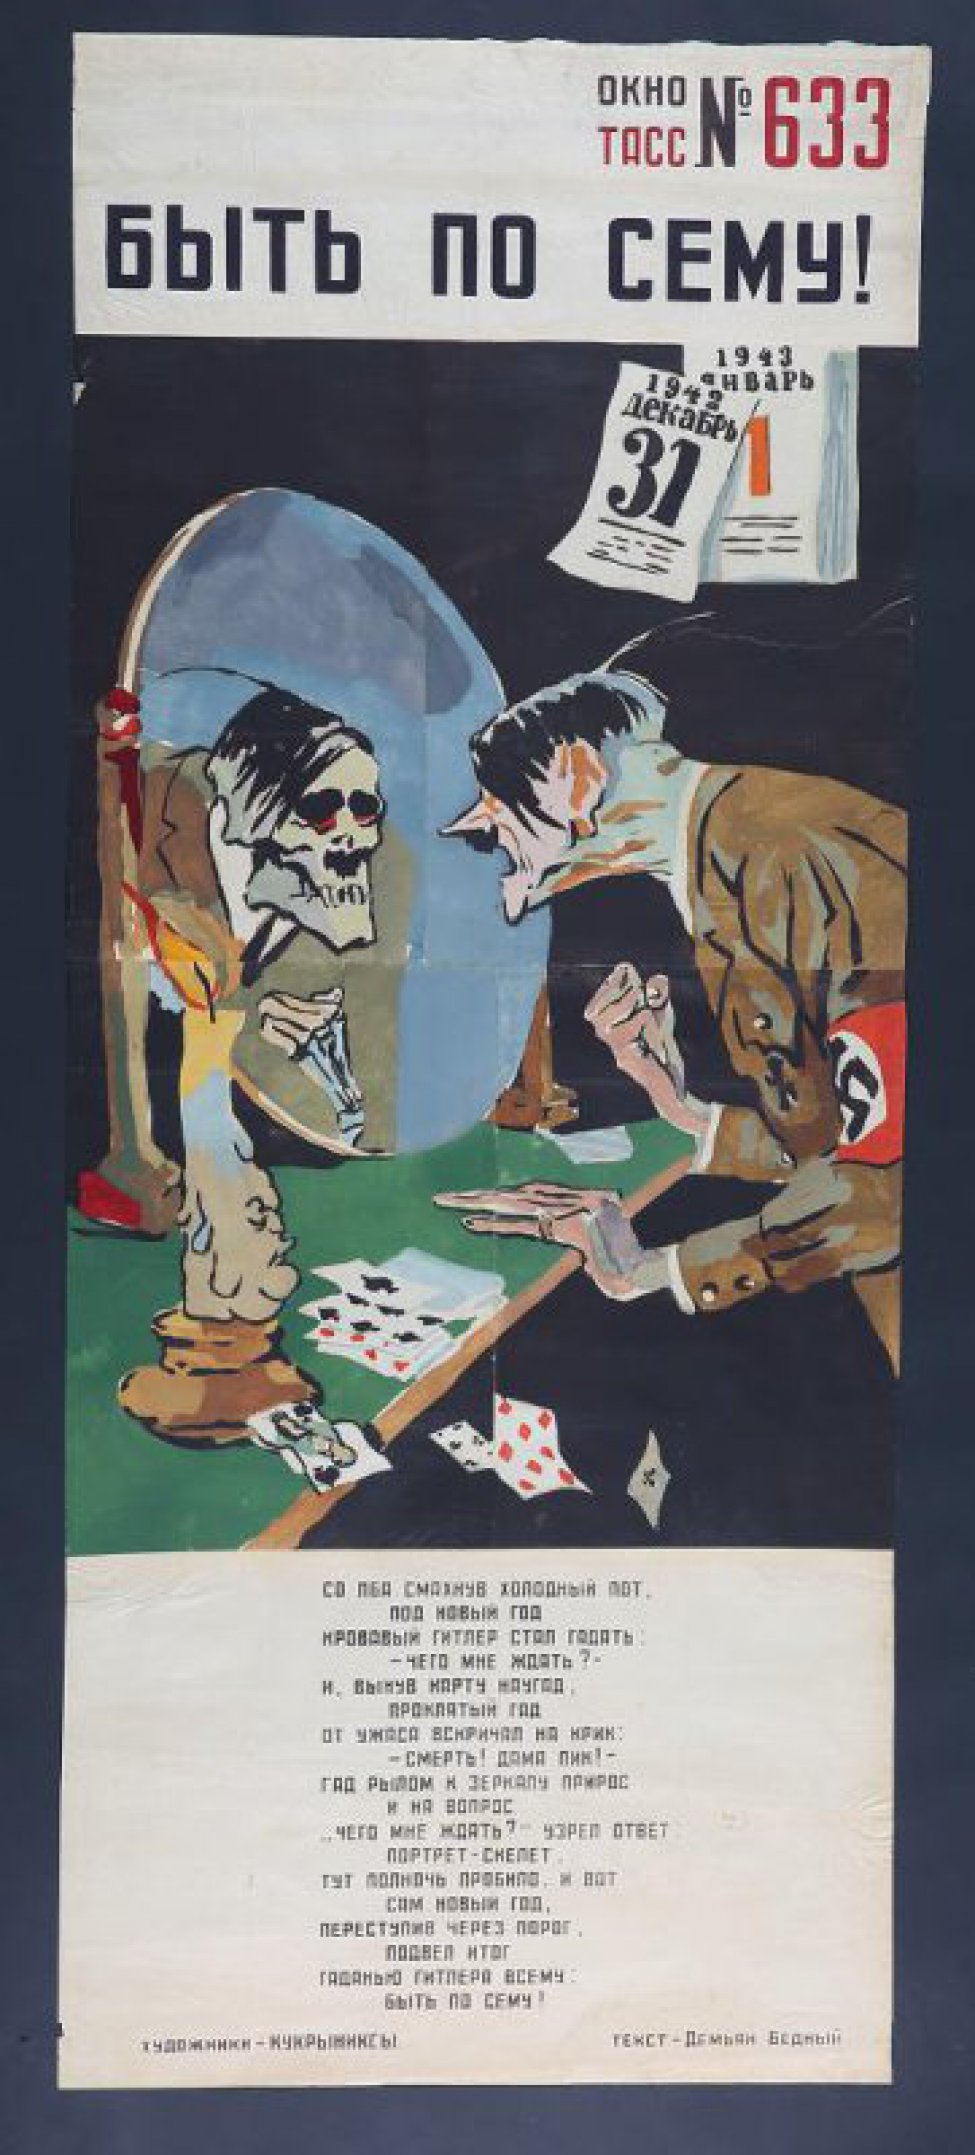 Изображен Гитлер со сжатым кулаком перед зеркалом, где виден скелет. На полке перед зеркалом стоит свеча и лежат игральные карты. Над головой Гитлера висит календарь, с которого слетает листок " 31 дек.1942г." текст Д.Бедного:" Со лба смахнув холодный пот..."